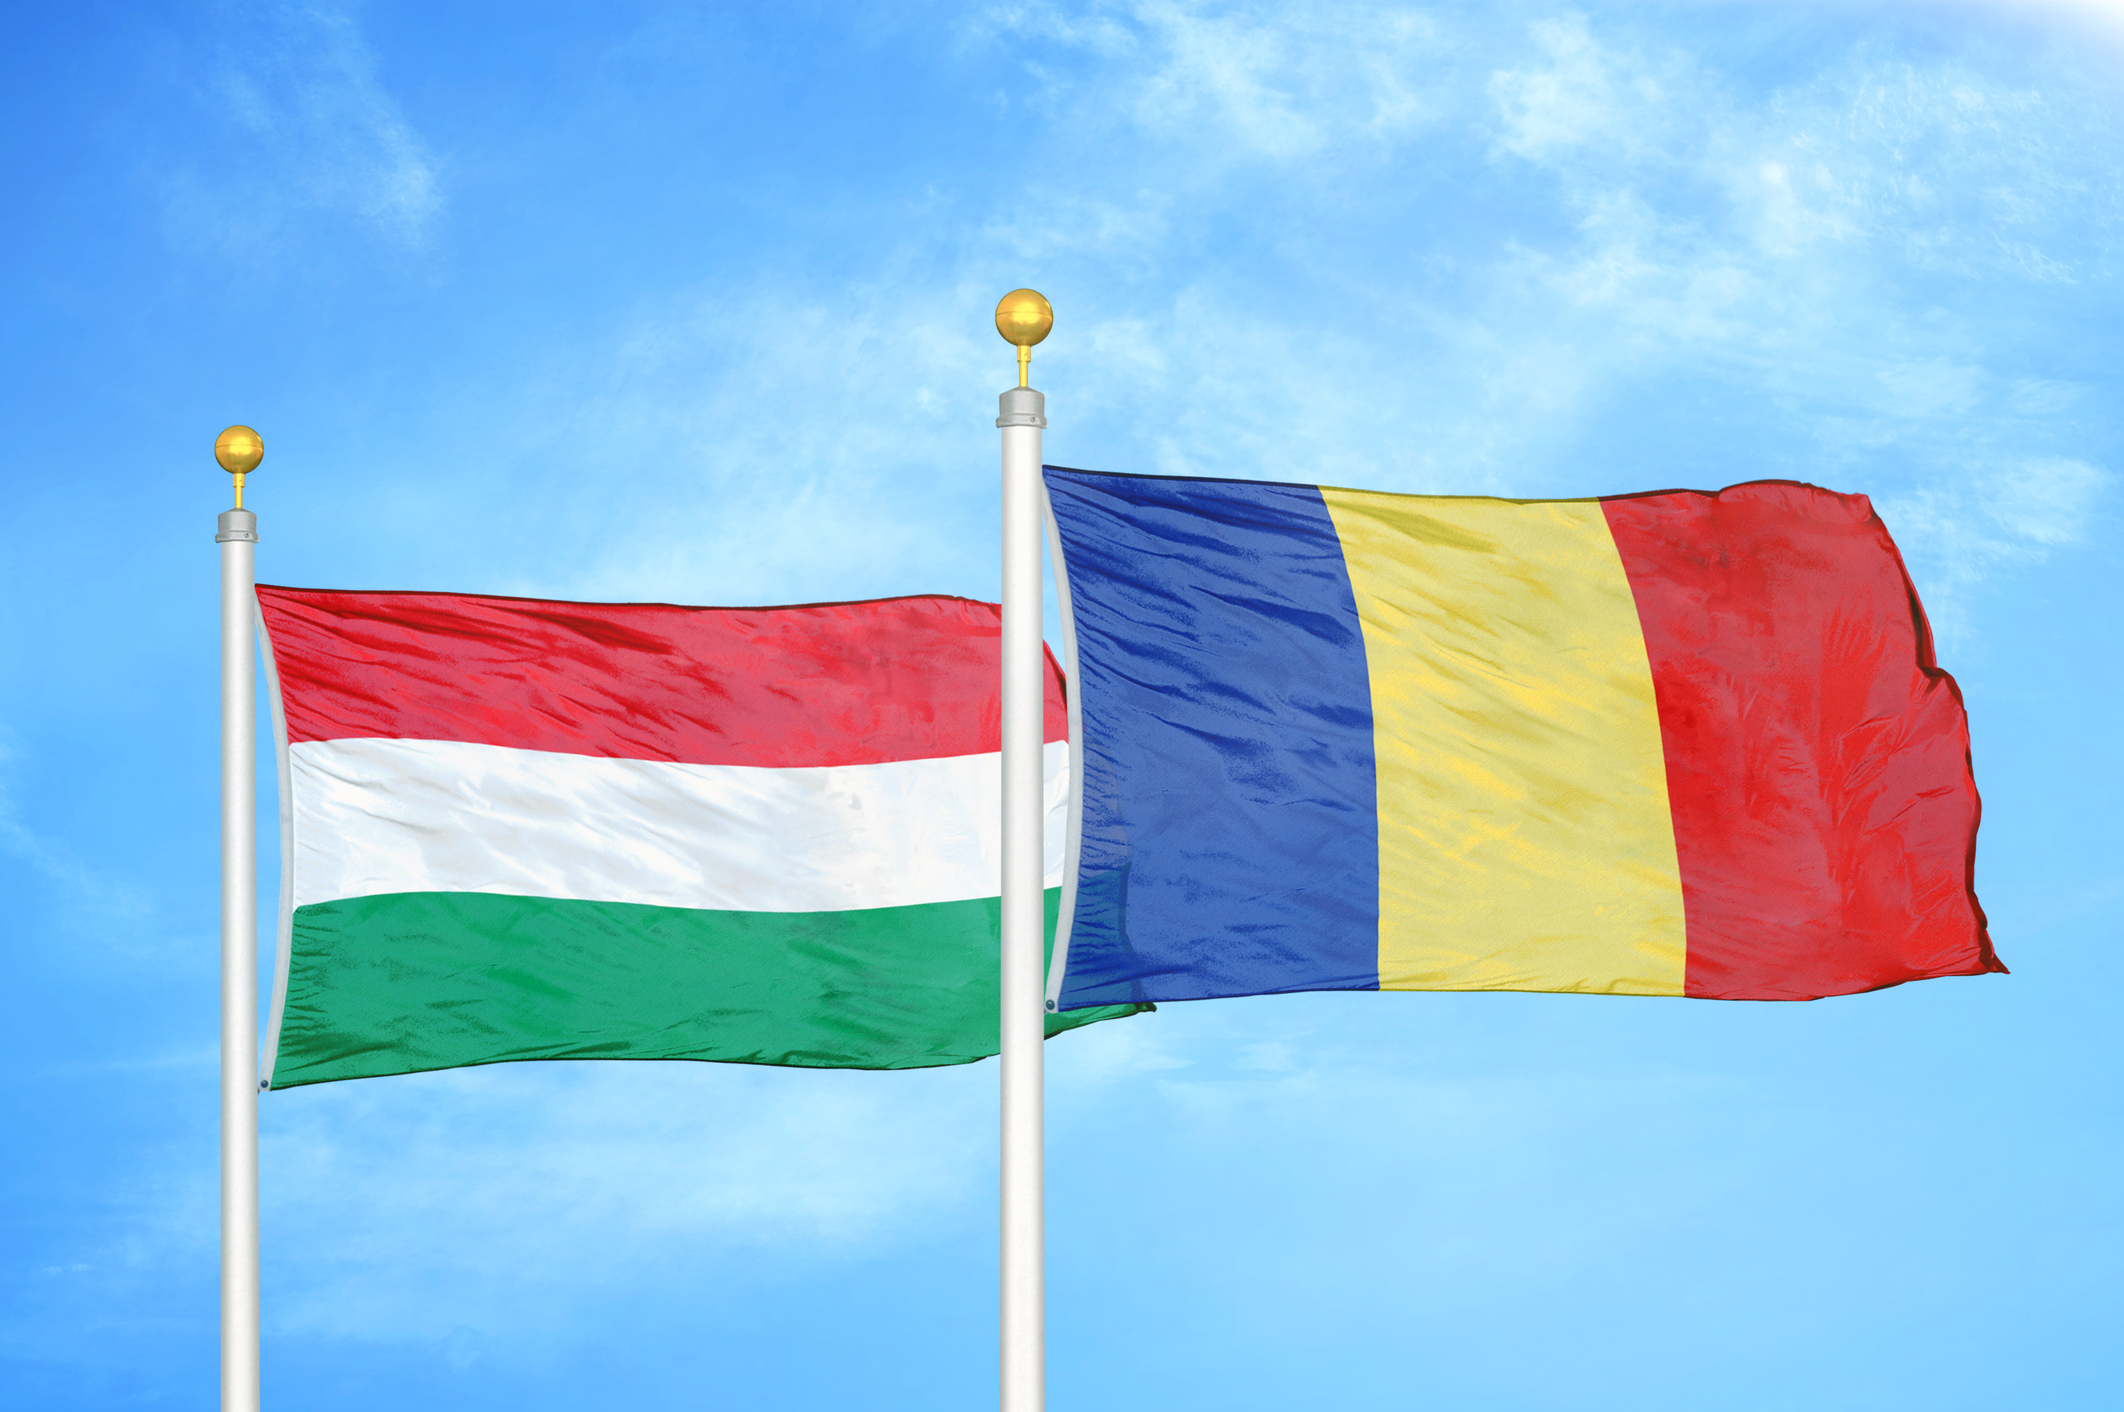 Economia românească a depășit-o pe cea maghiară! Țările vecine sunt îngrijorate